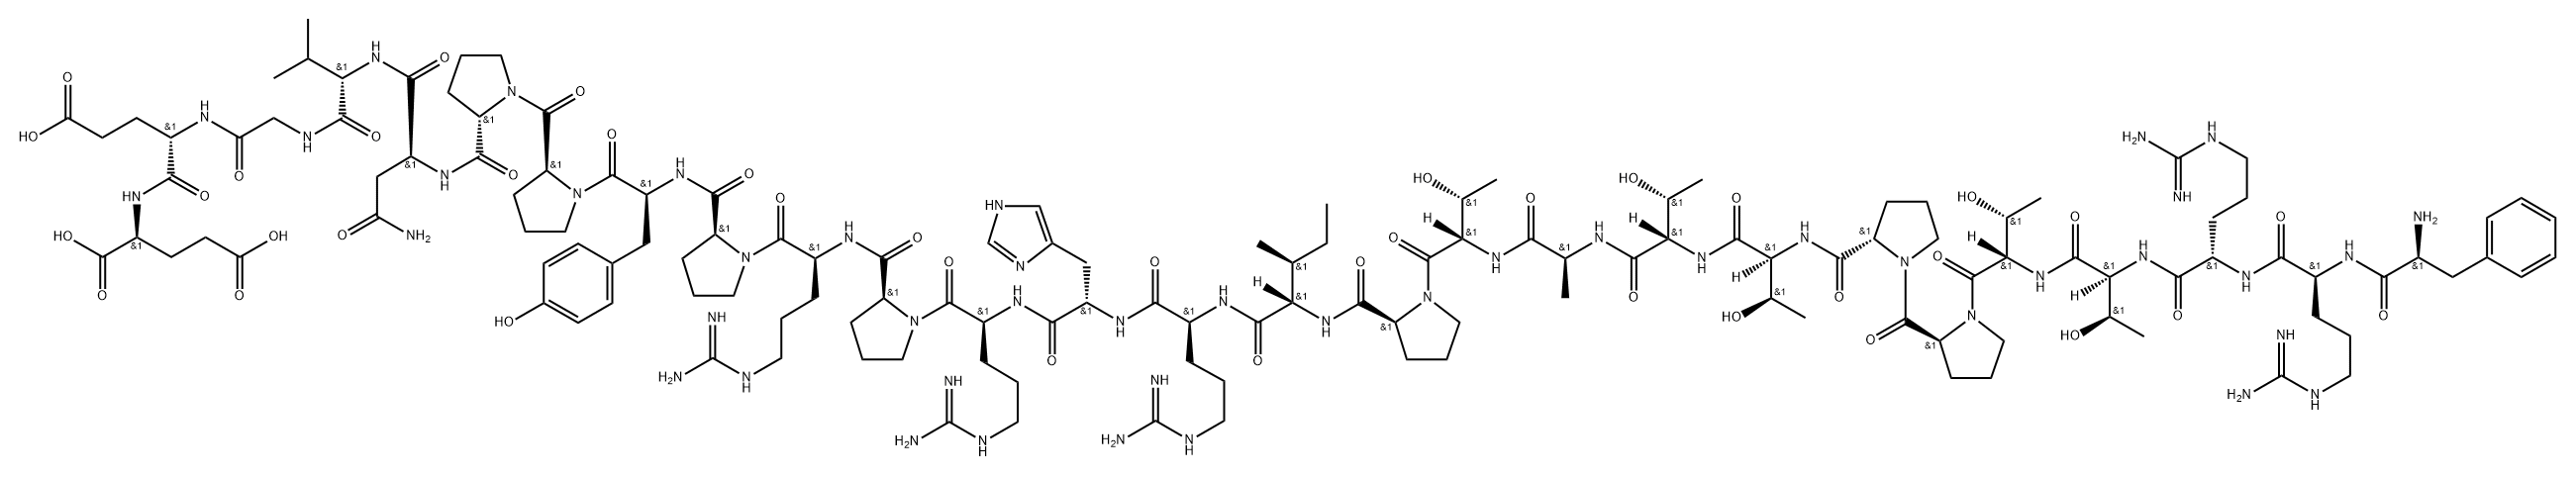 CS4 peptide